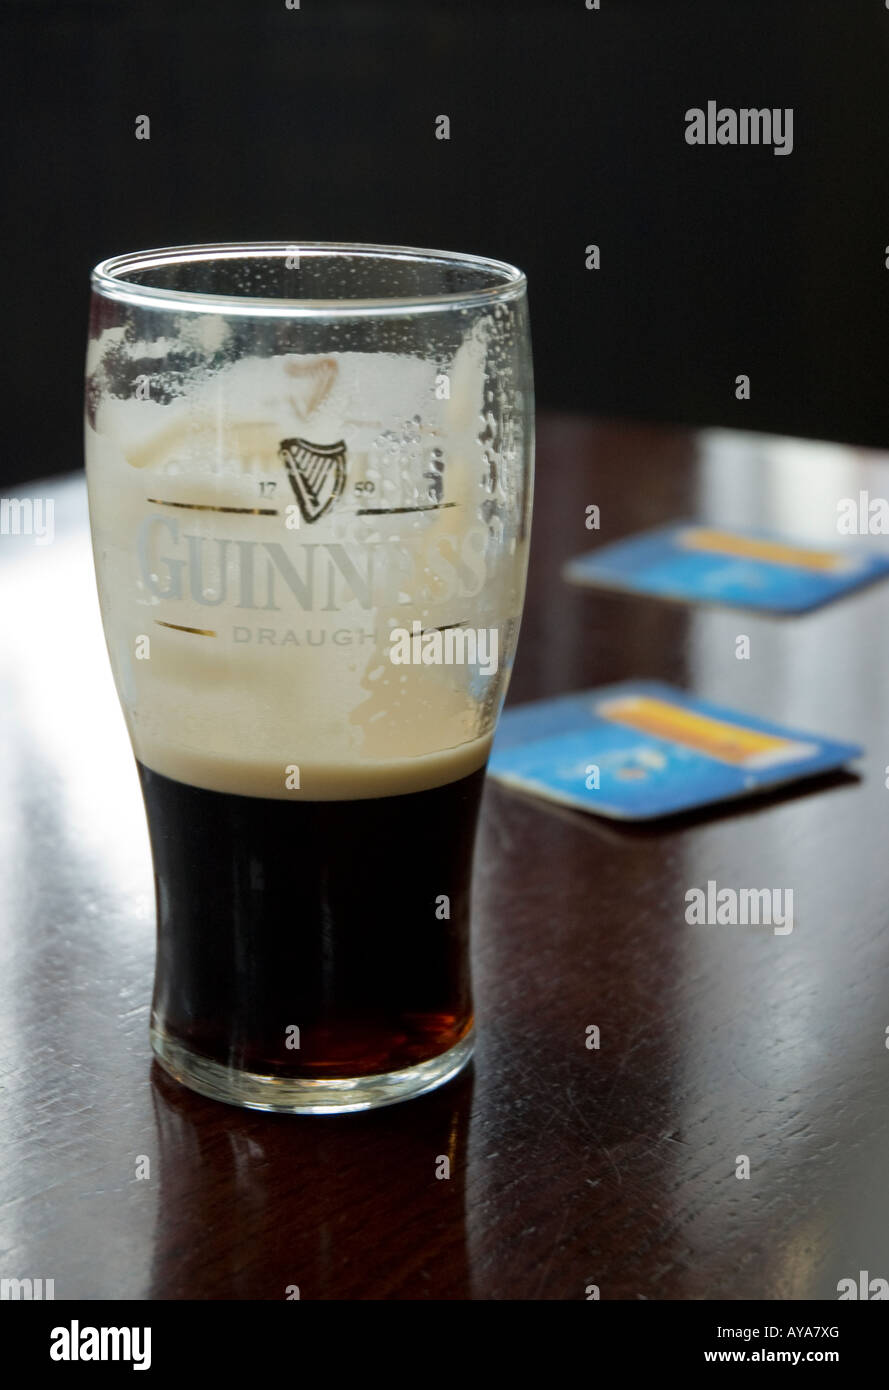 Guinness Pint Glas halb, am Nachbartisch Bierdeckel voll Stockfoto